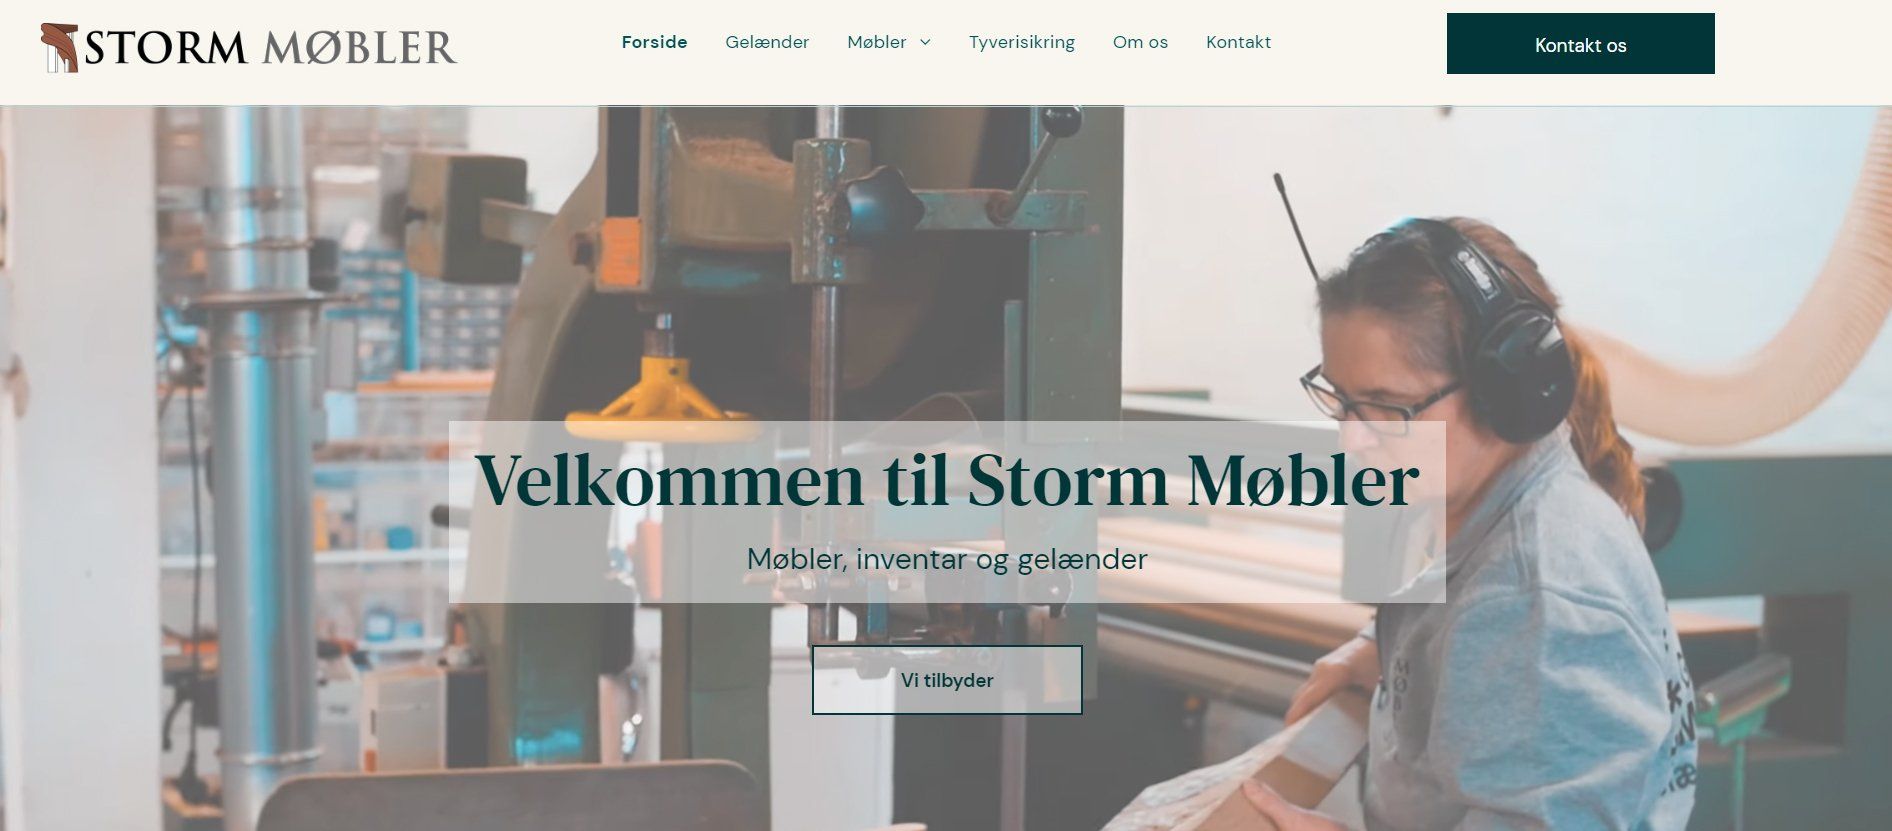 Et billede af forsiden på Storm Møblers hjemmeside